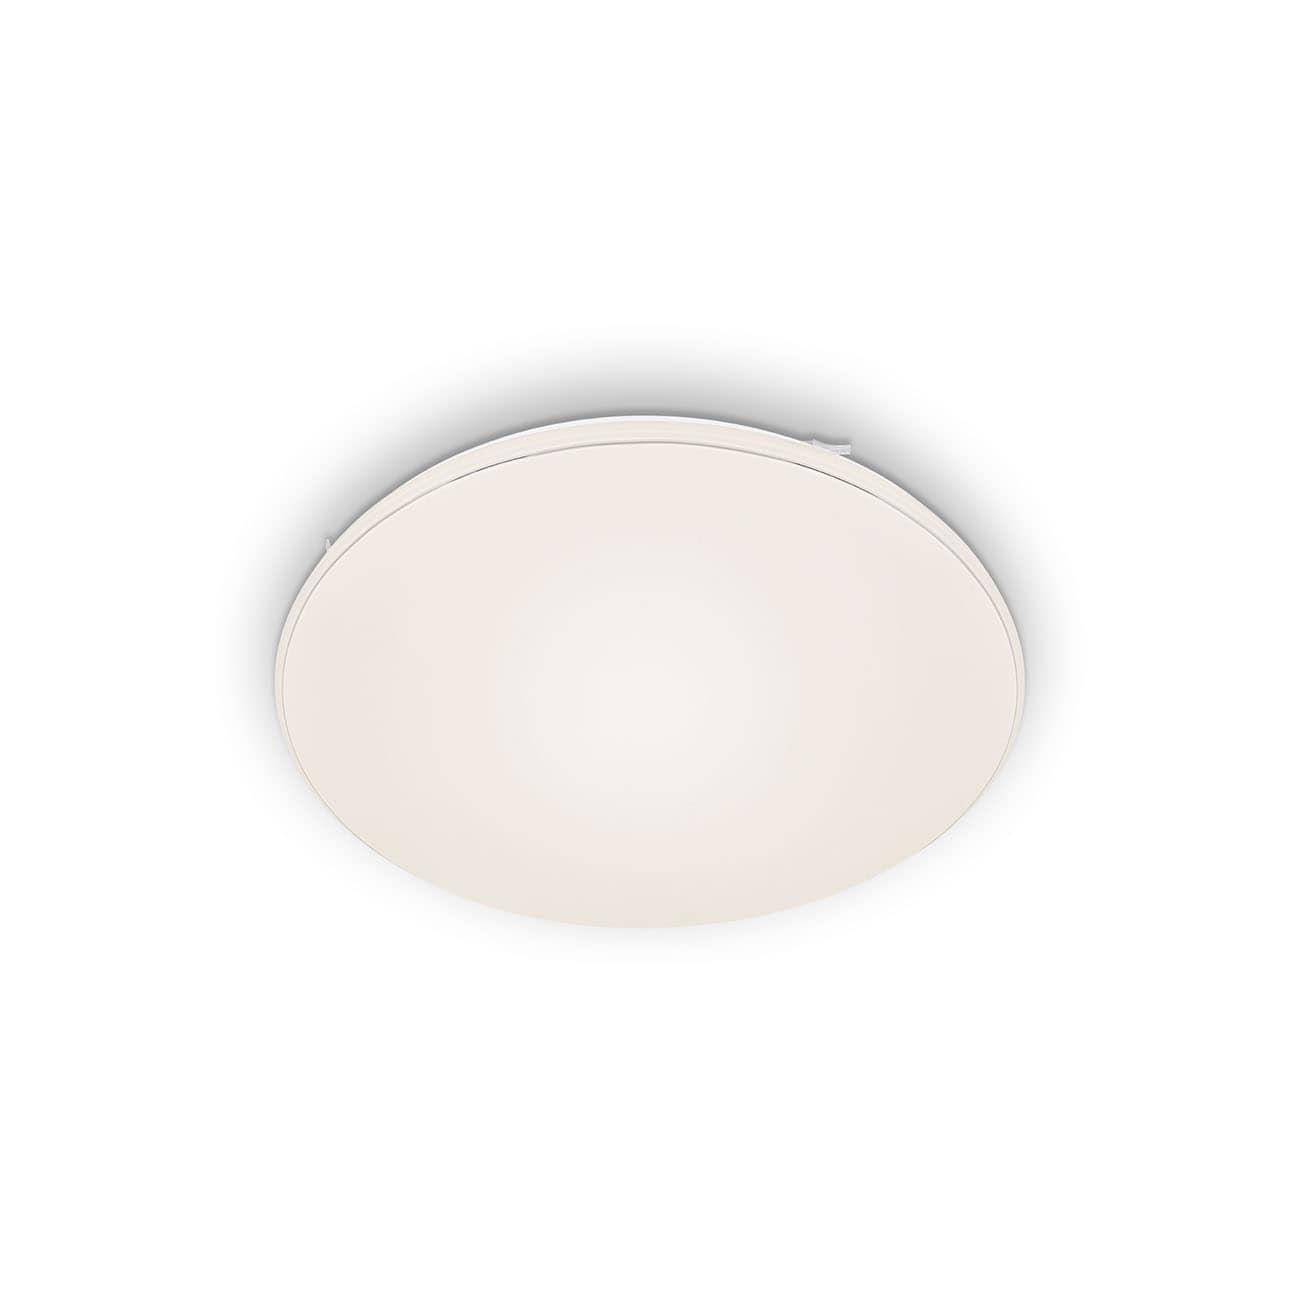 LED Ceiling light Ø 53 cm 48W 5100lm white